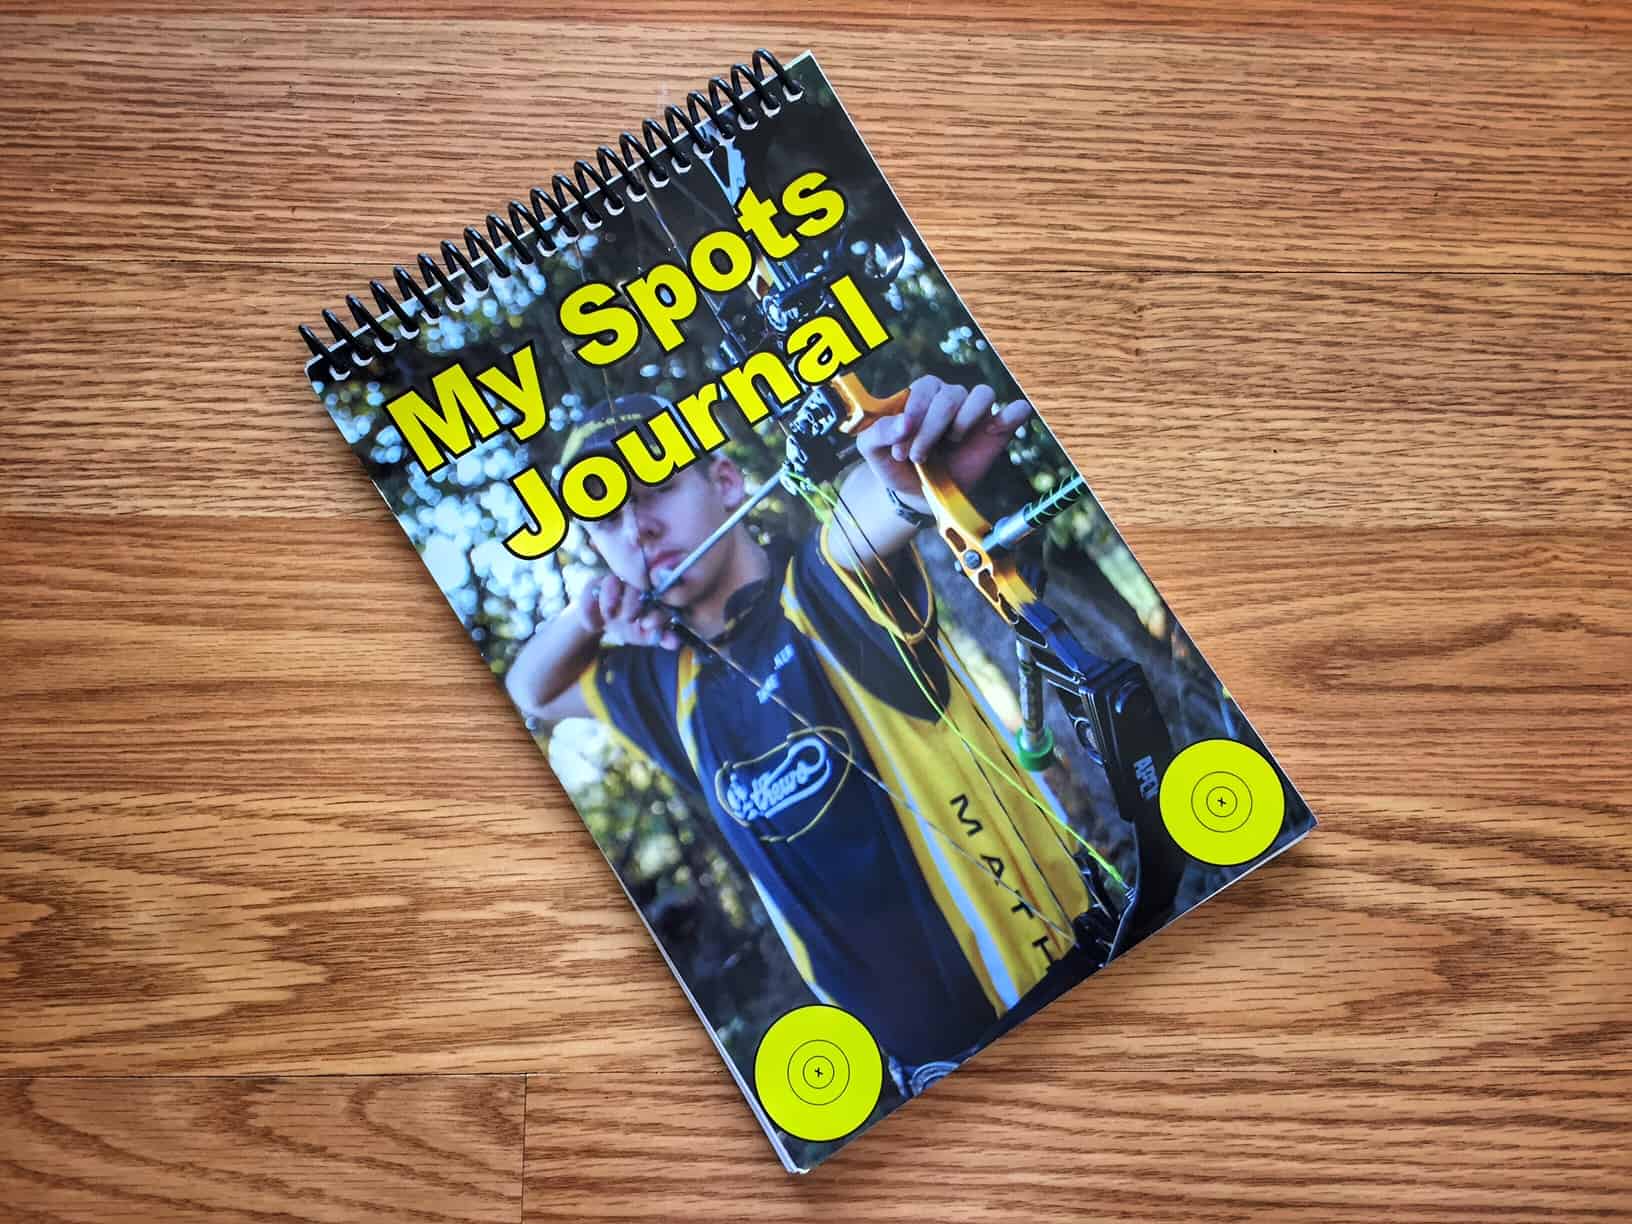 My Spots Journal